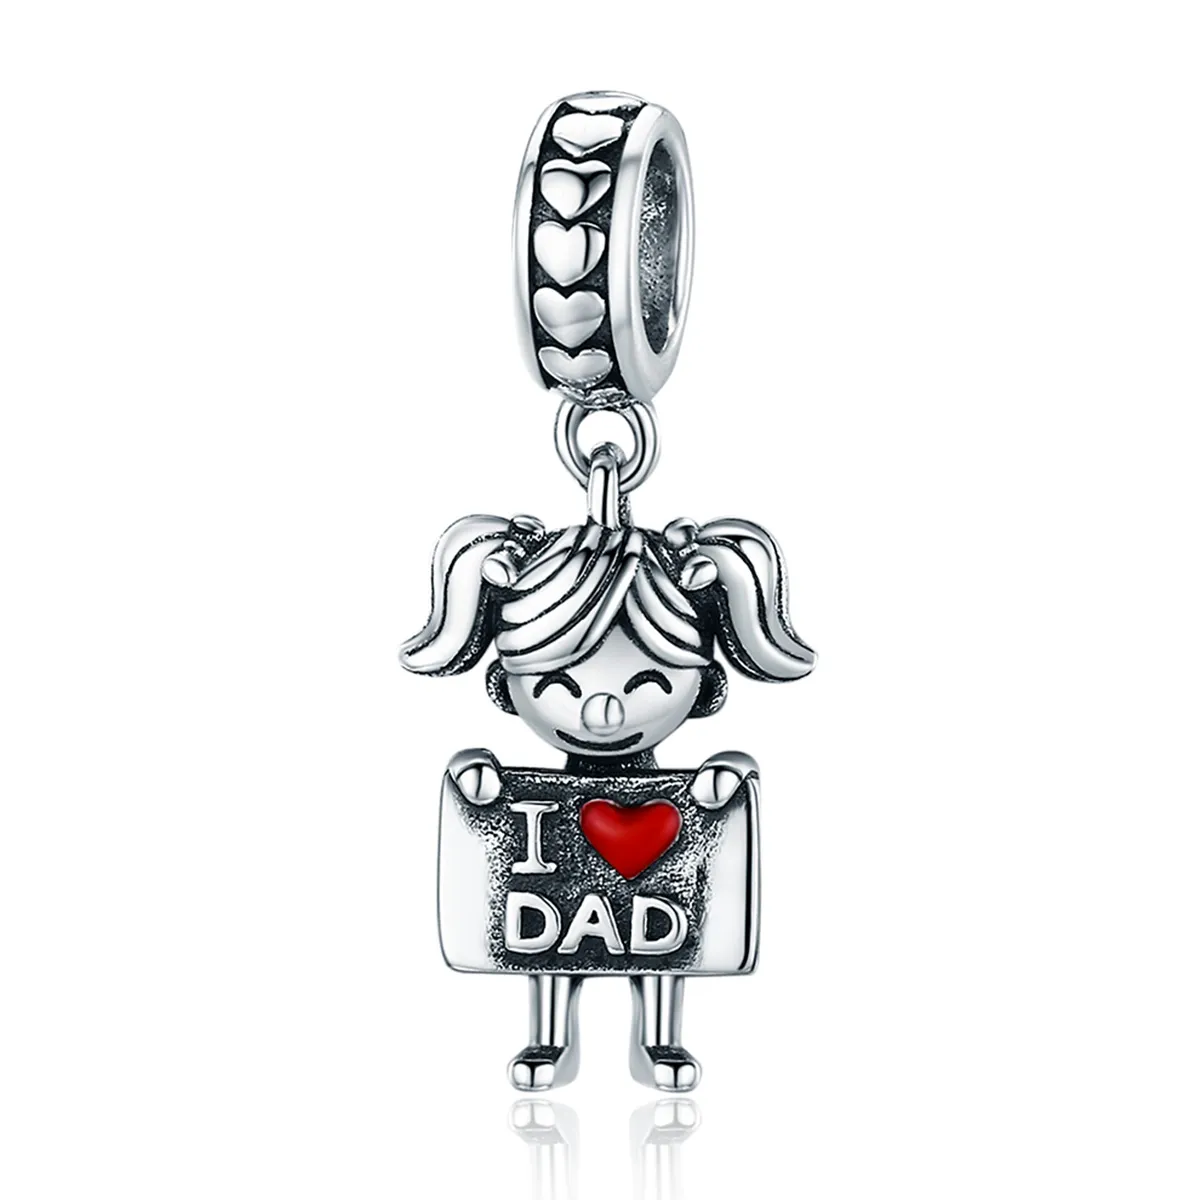 Talisman pandantiv Tip Pandora cu Fata lui tata din argint - SCC690